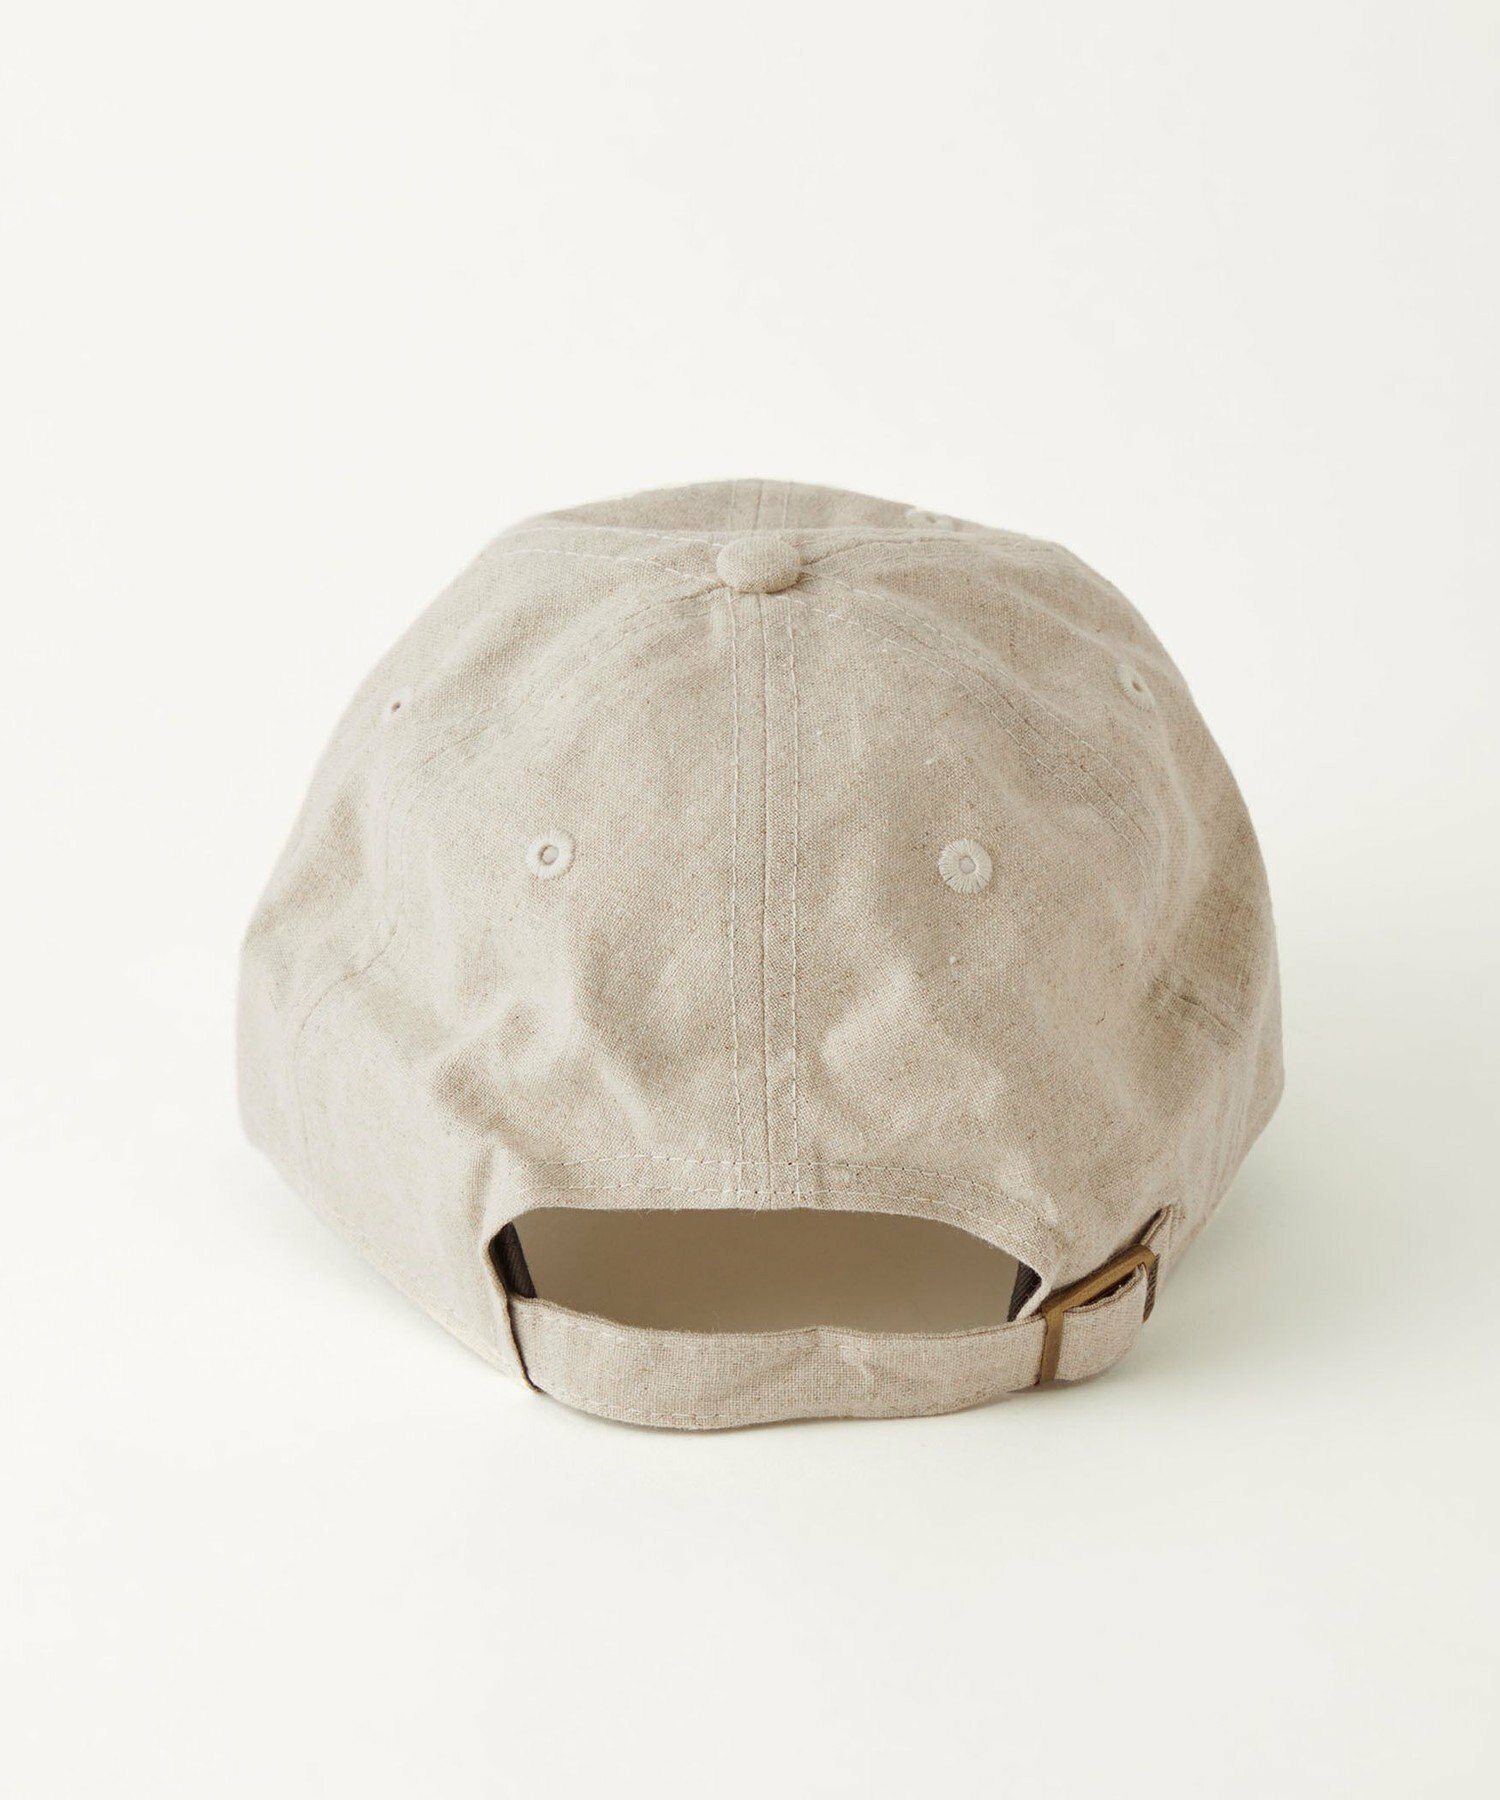 【別注】<NEW ERA>COFLAX キャップ / 帽子 2